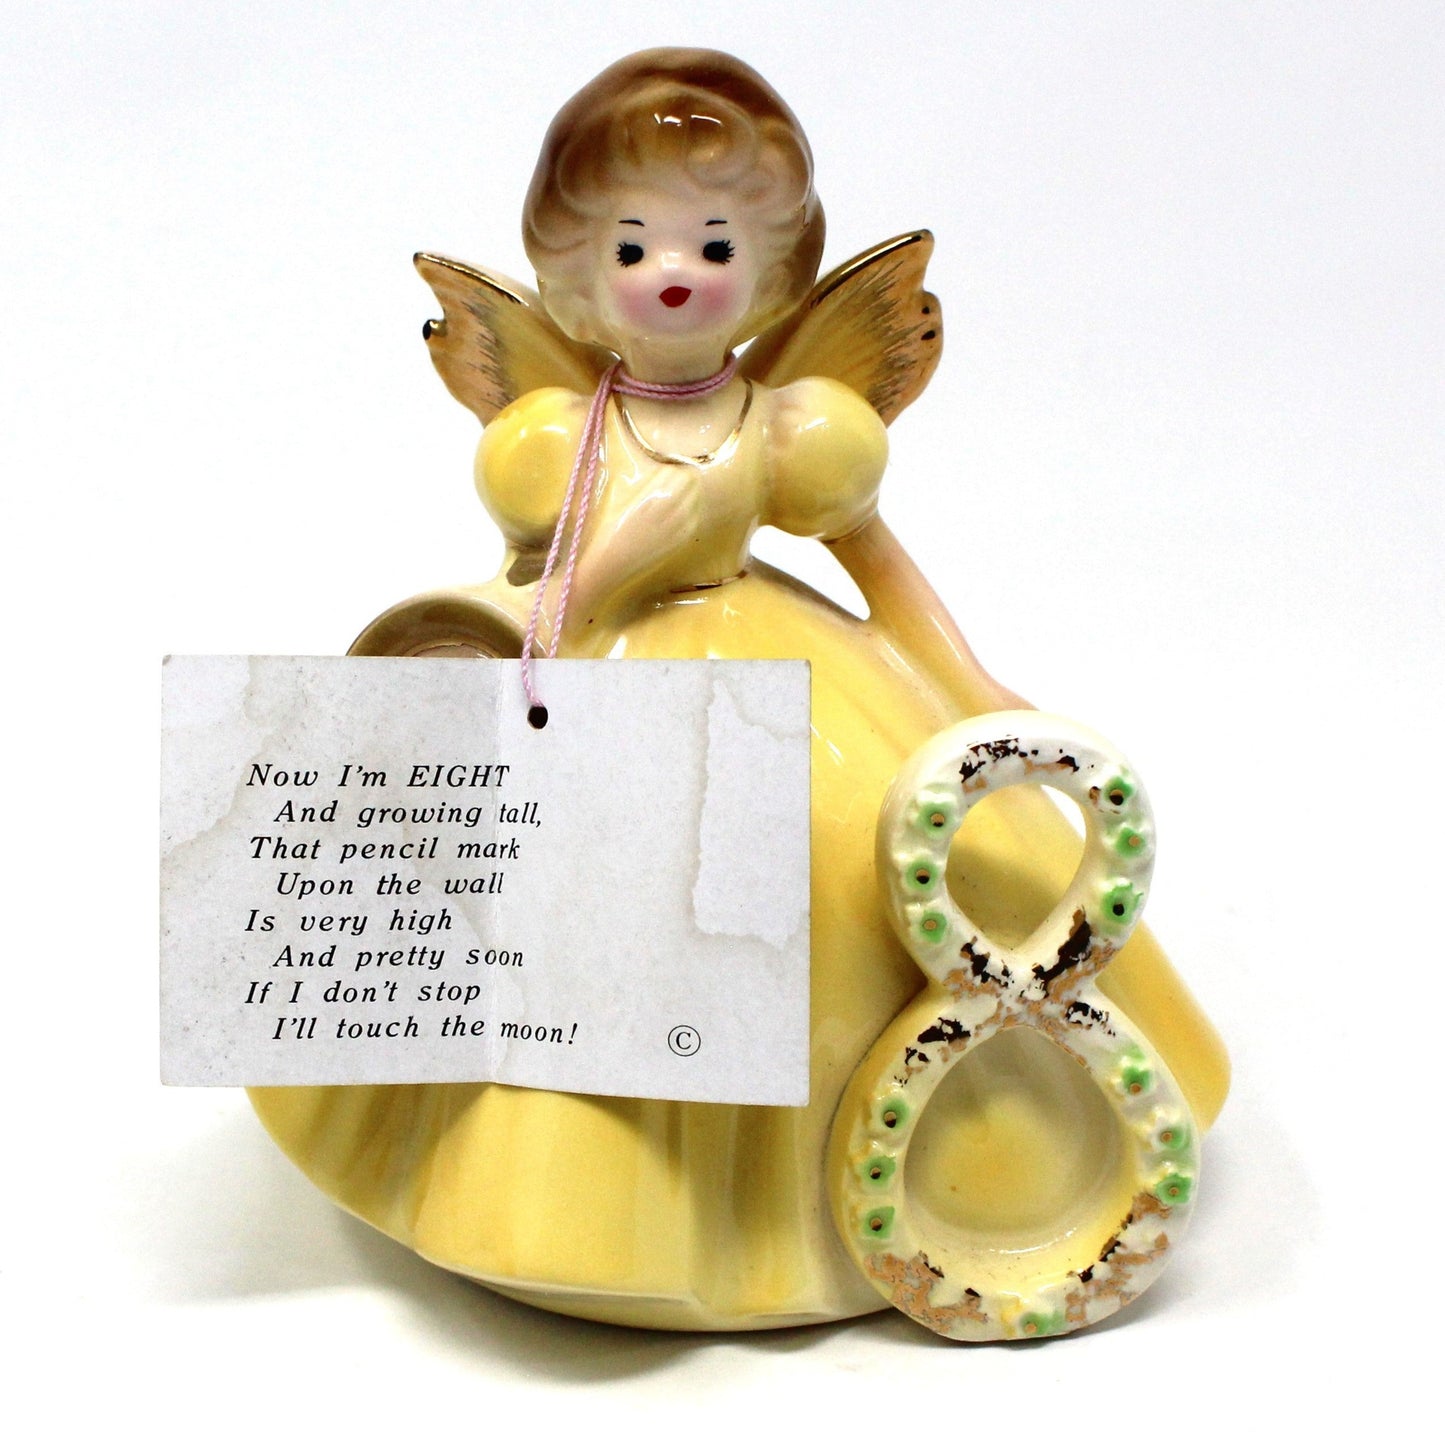 Figurine, Josef Originals Birthday Angel, 8 Years, Yellow Dress